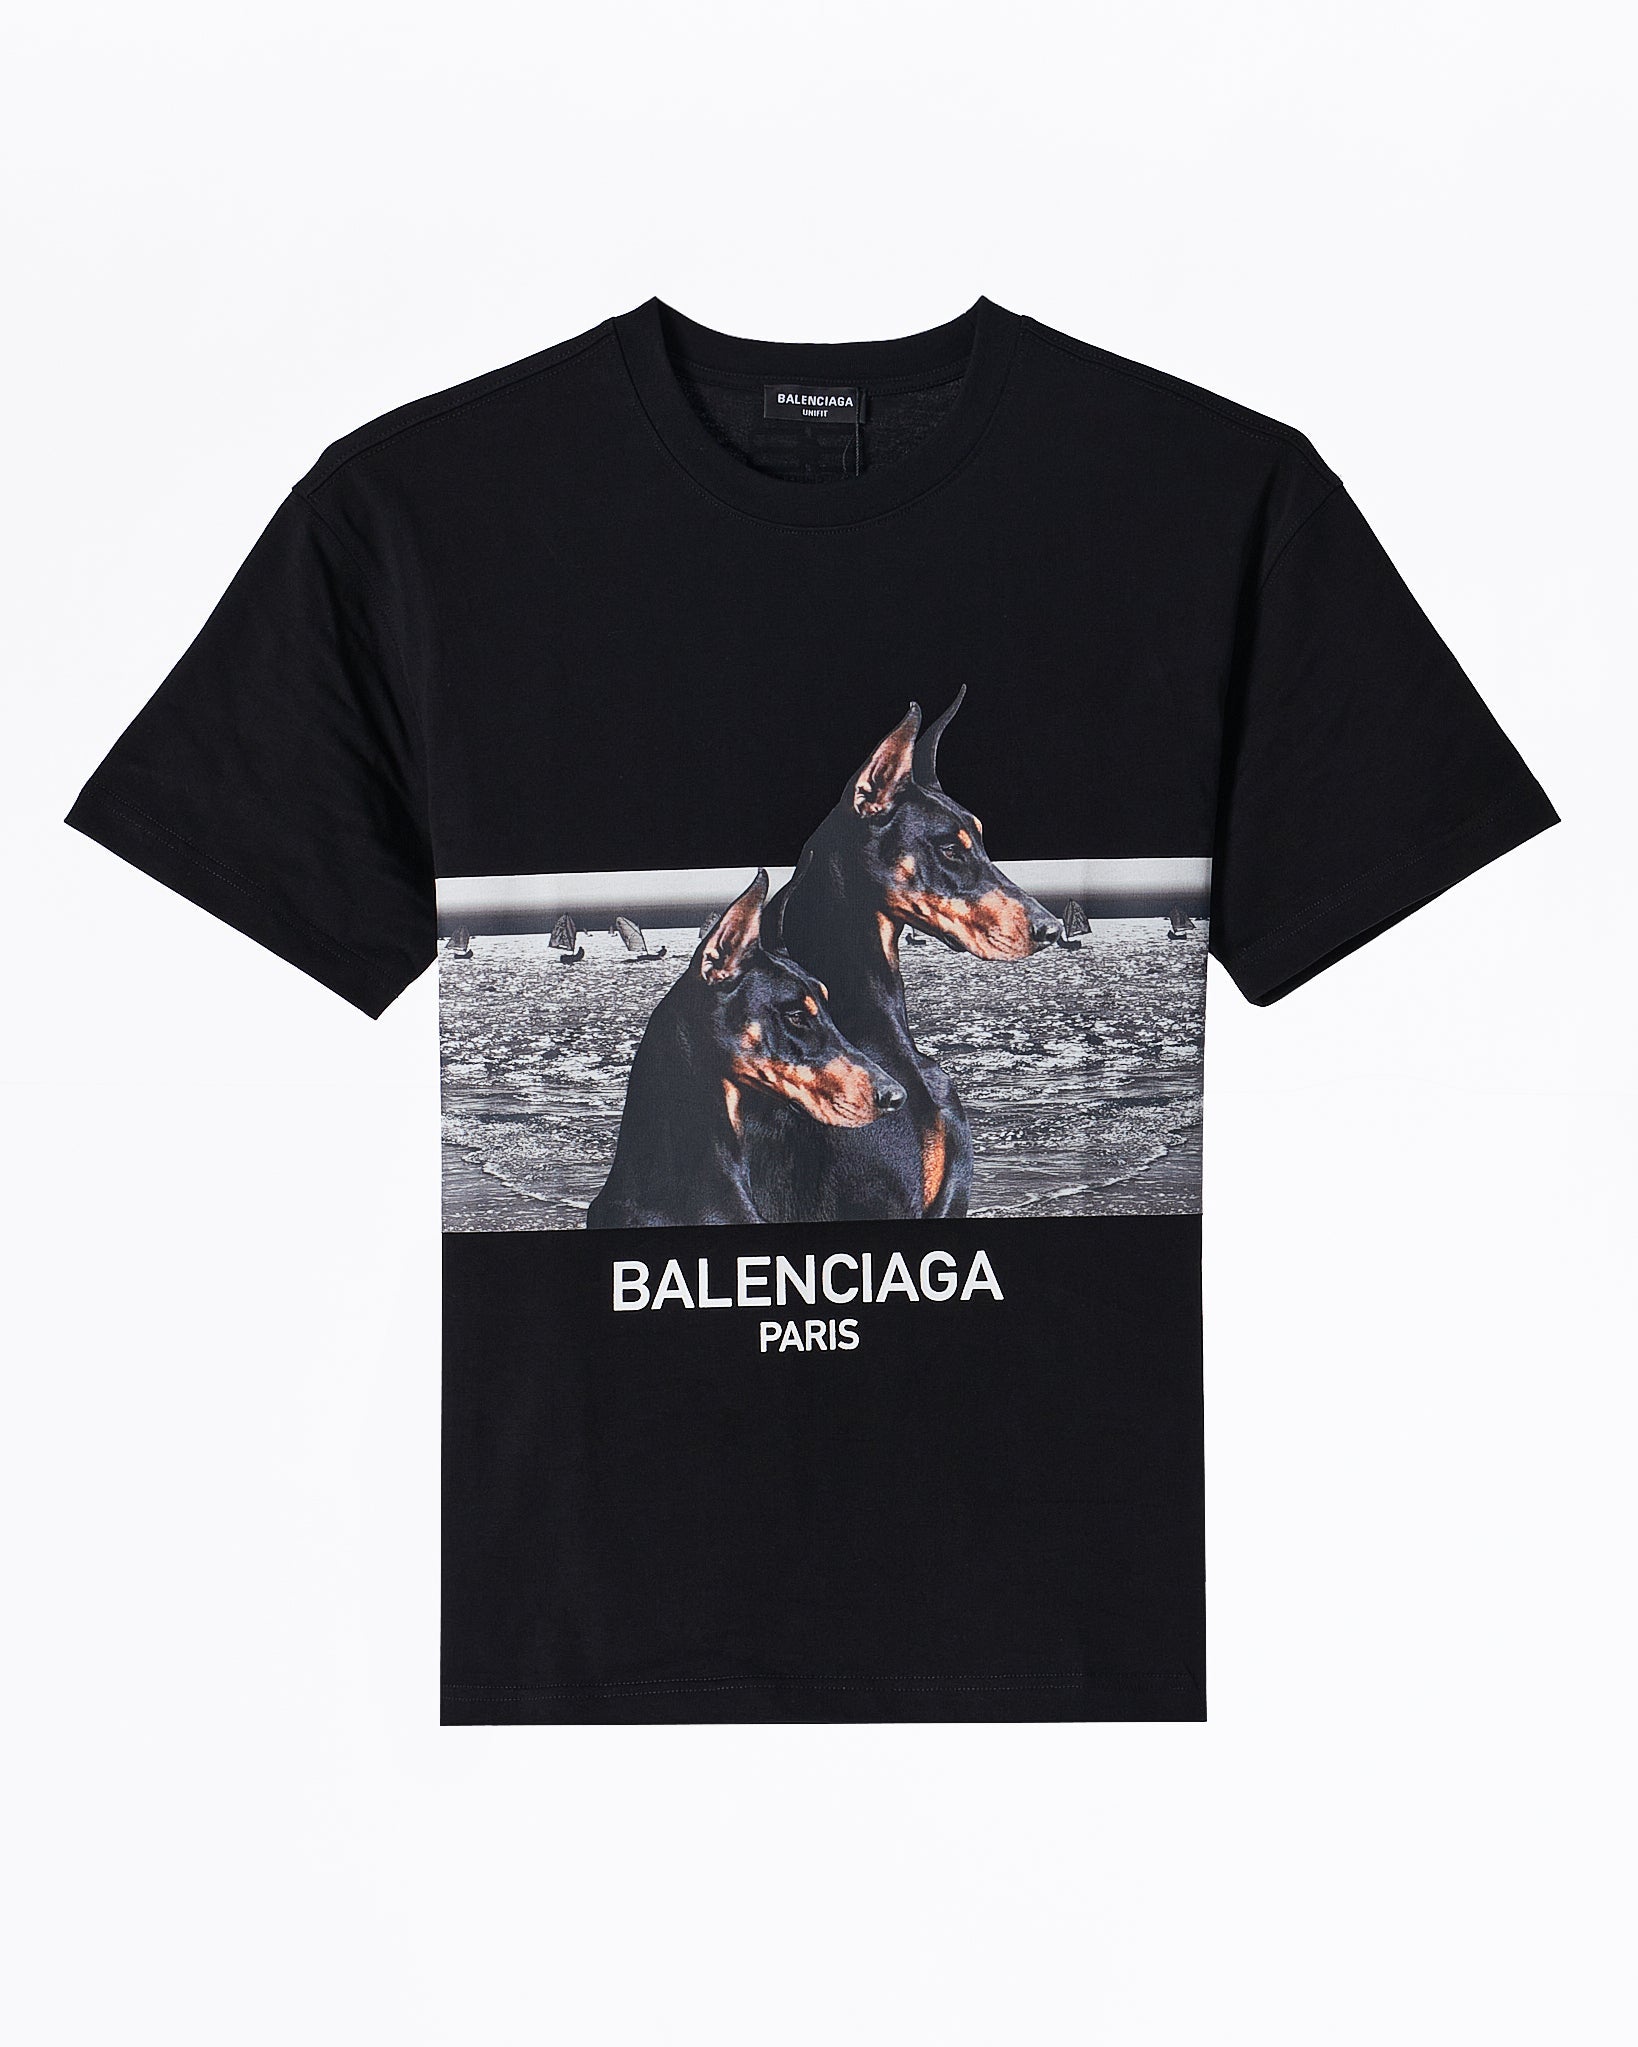 MOI OUTFIT-BAL Two Doberman Men Black T-Shirt 54.90